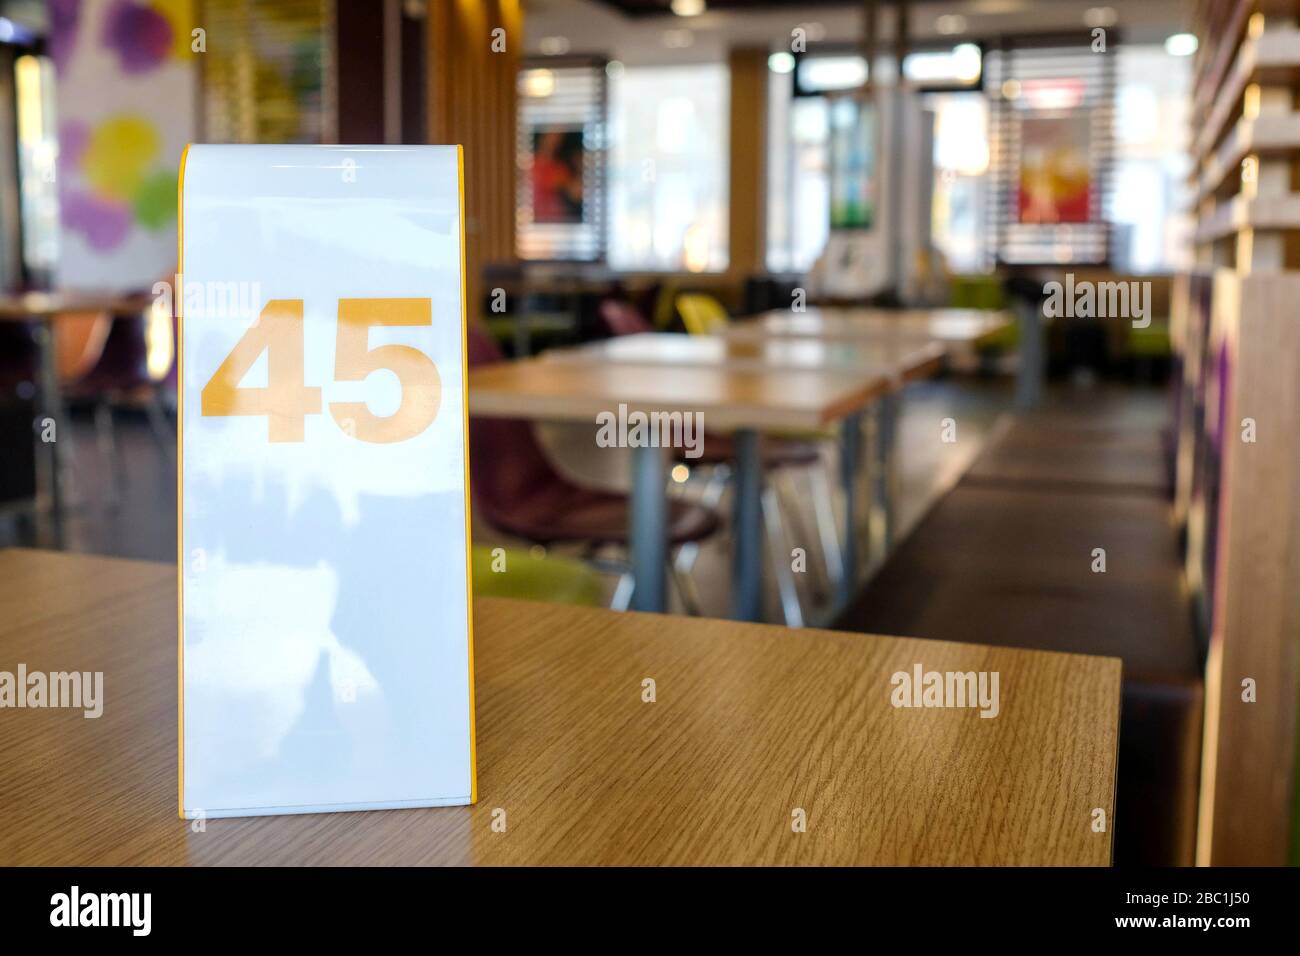 Schild Nr. 45 bei mcdonalds. Warten auf eine Mahlzeit in einem Restaurant. Stockfoto